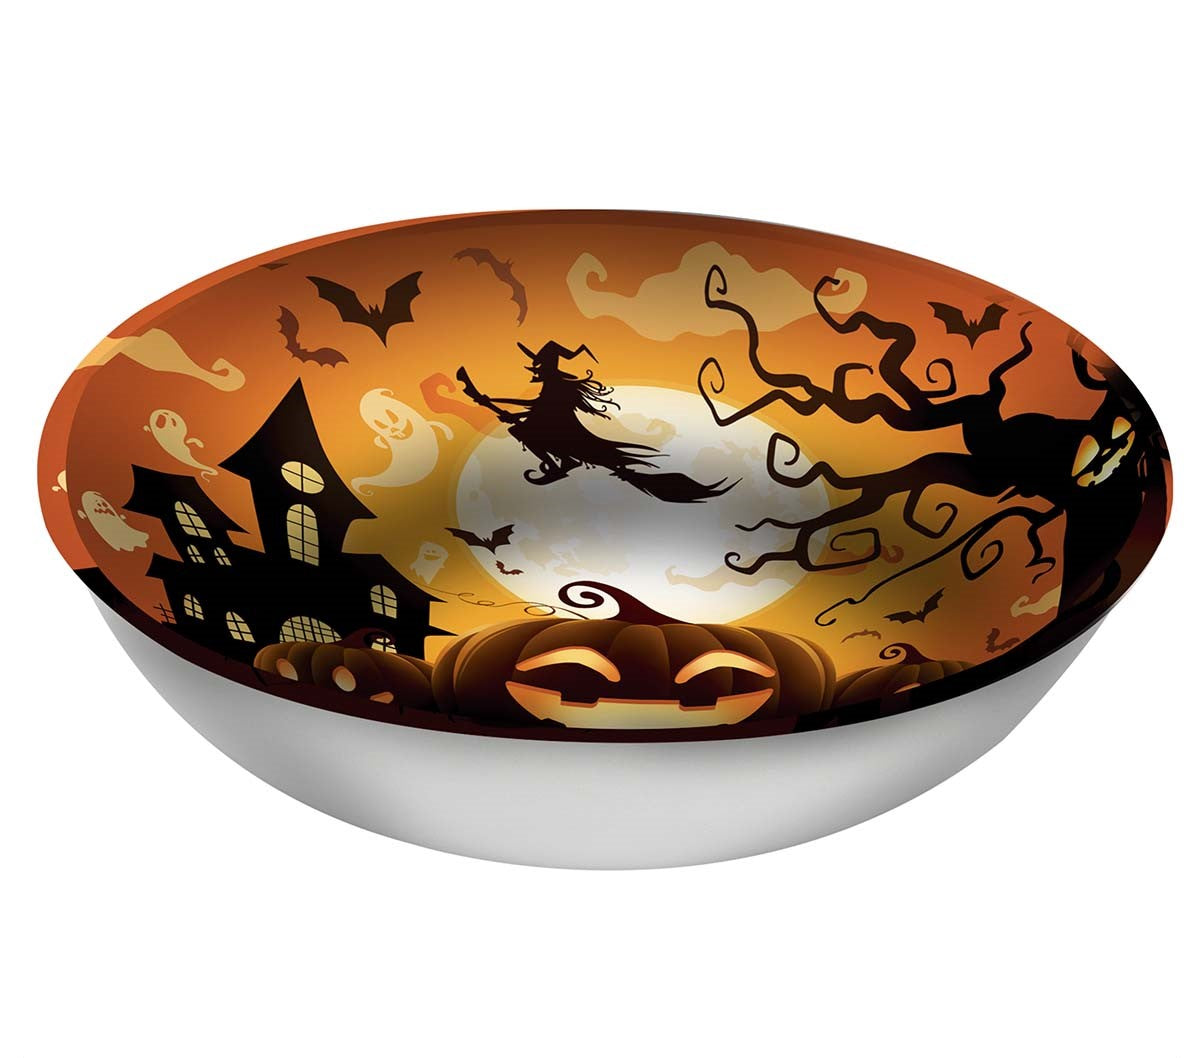 Spooky Pumpkin Bowl Halloween Tableware